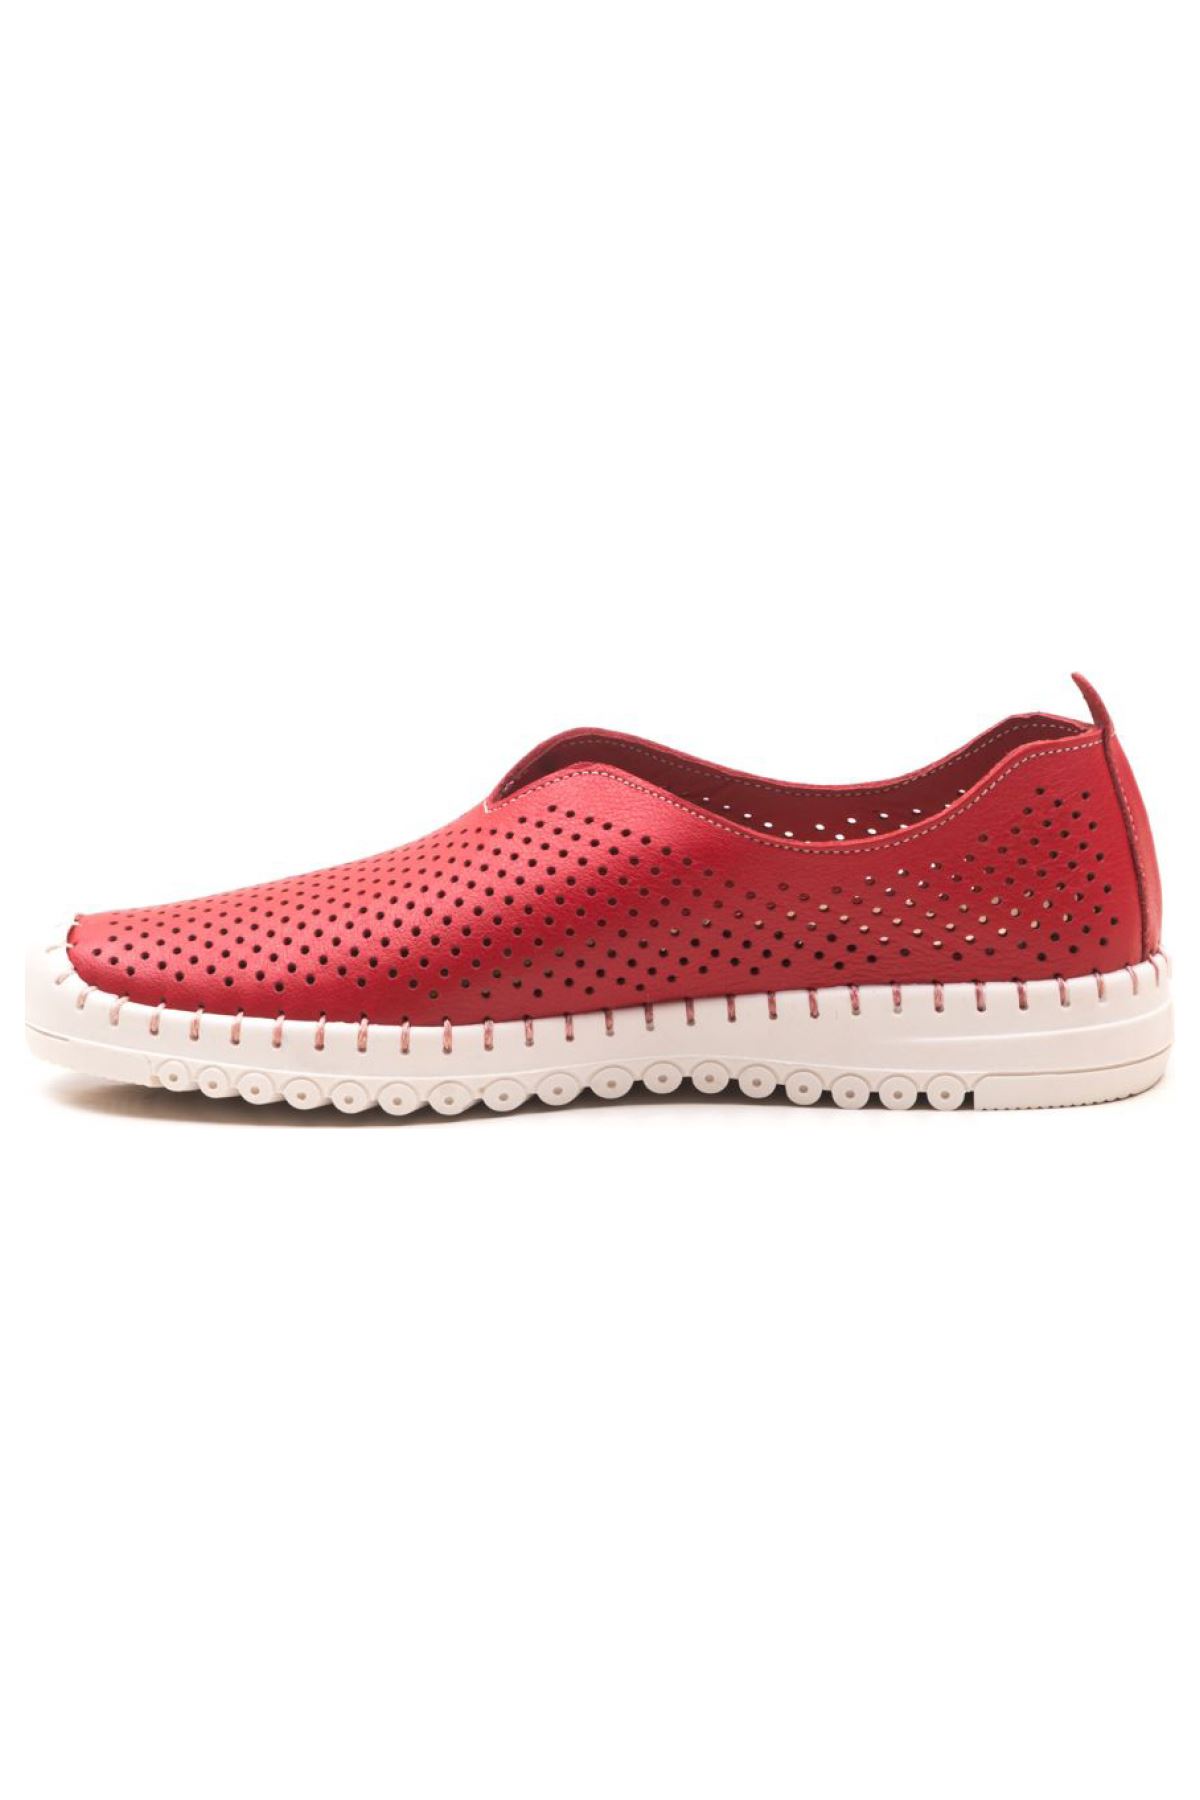 Hakiki Deri Kadın Deri Casual Ayakkabı Siena Gate Shoes-Kırmızı